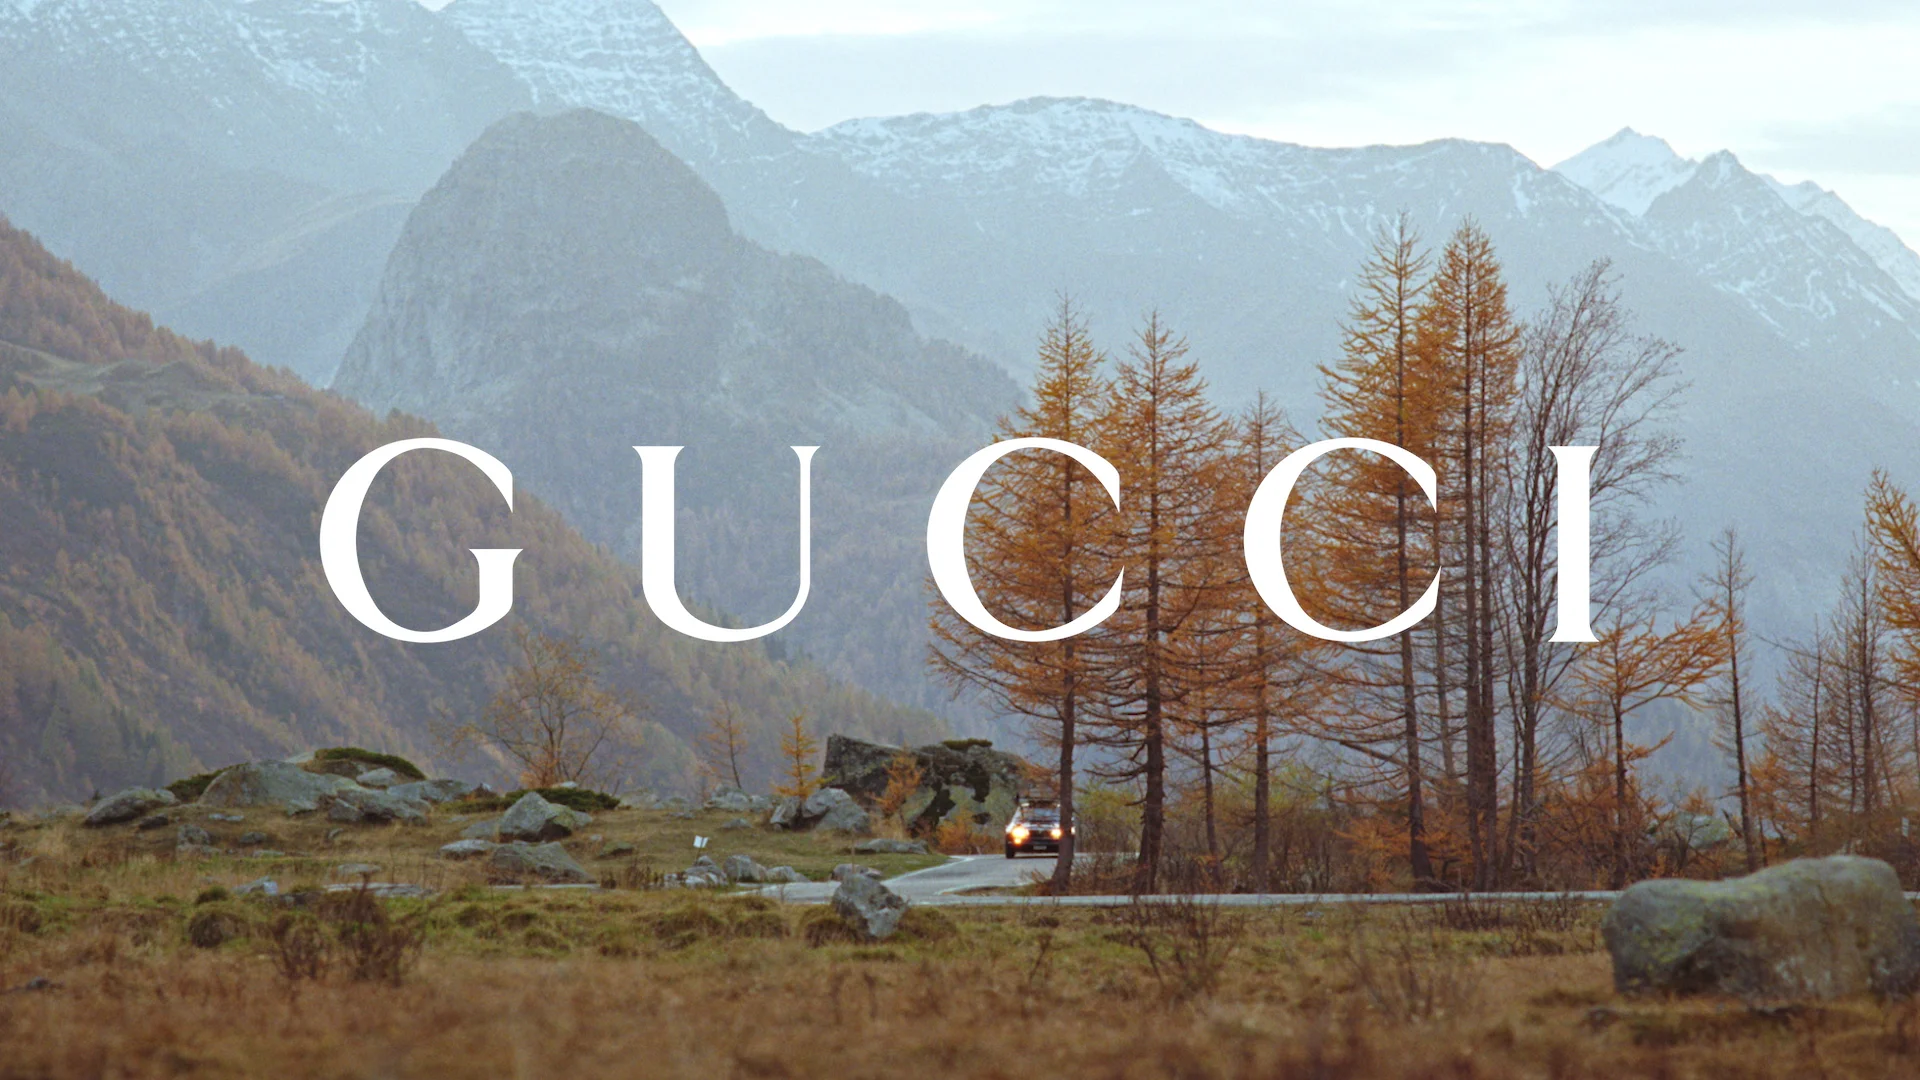 Gucci - Après-Ski on Vimeo